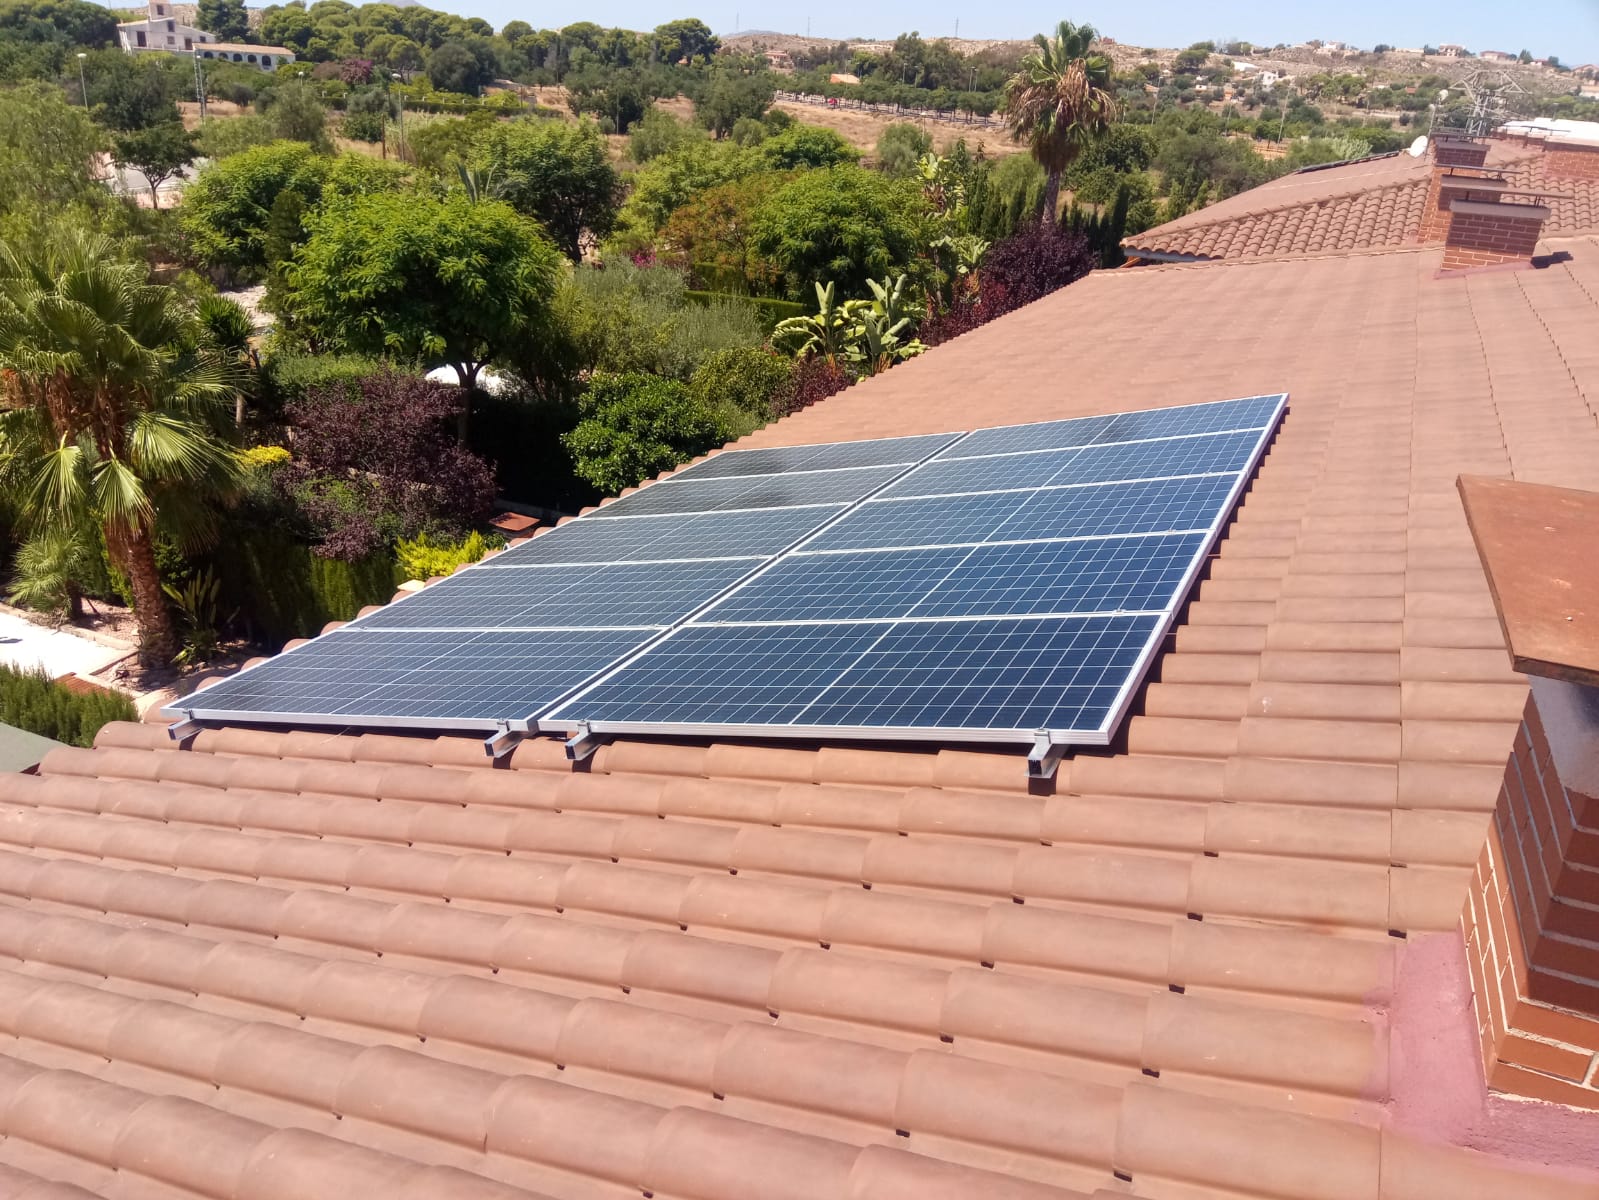 placas solares en tu casa